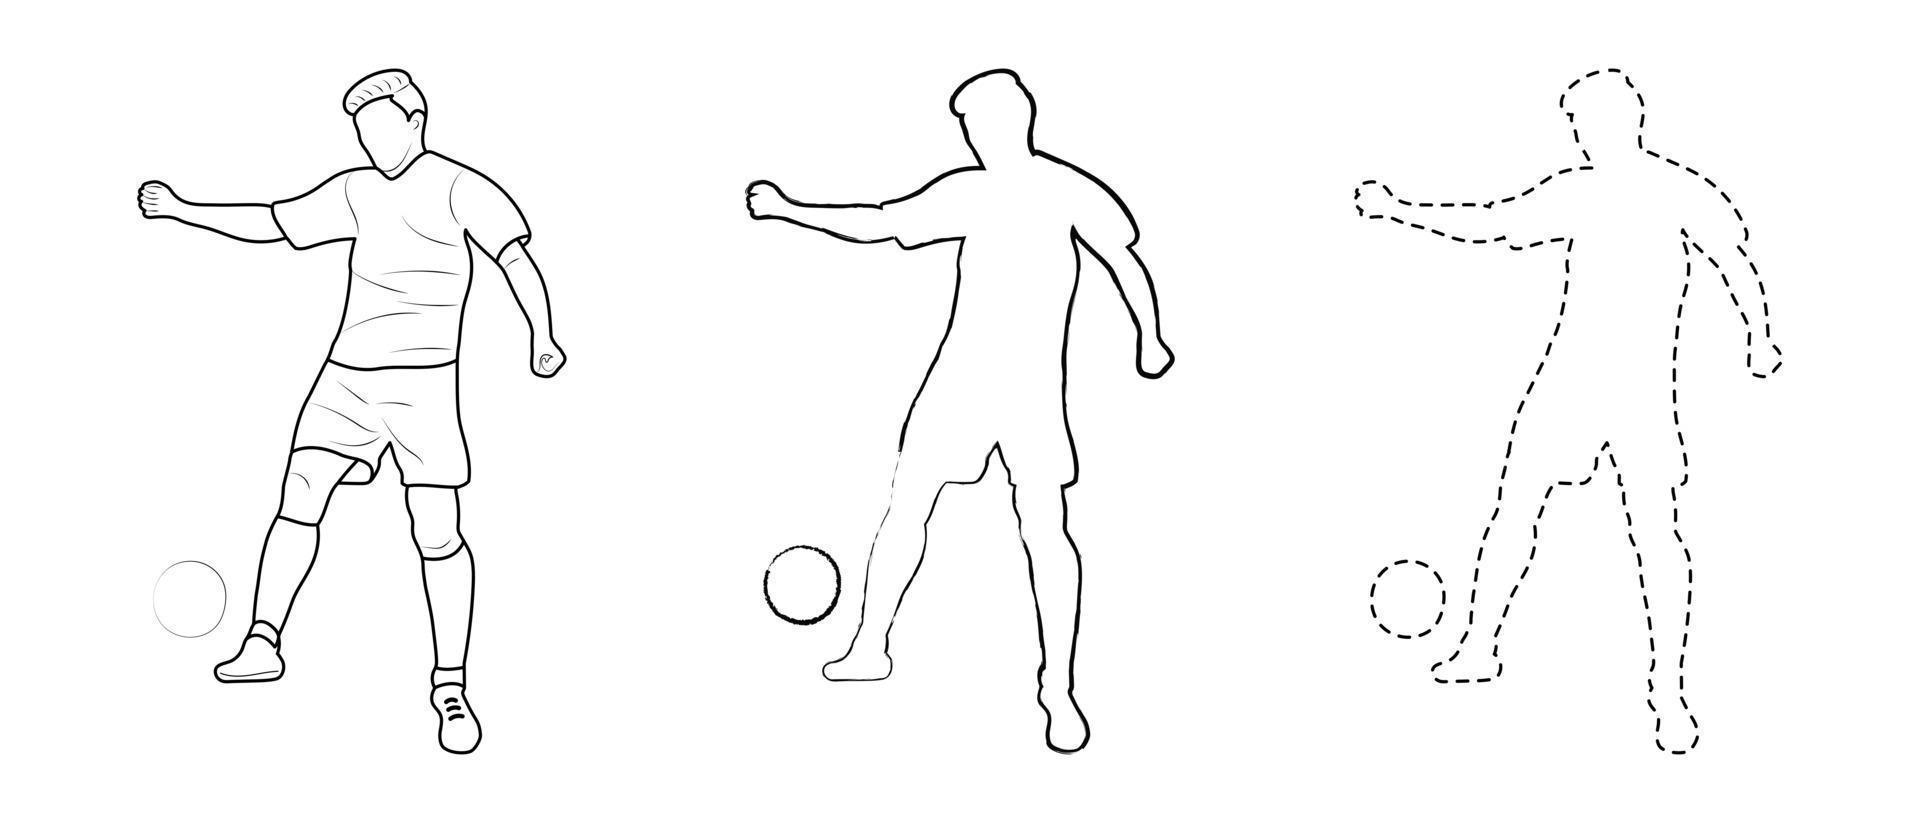 skizzenzeichnung, silhouette umriss, sportler fußballer im ballspiel. Linienstil und Pinselstriche vektor